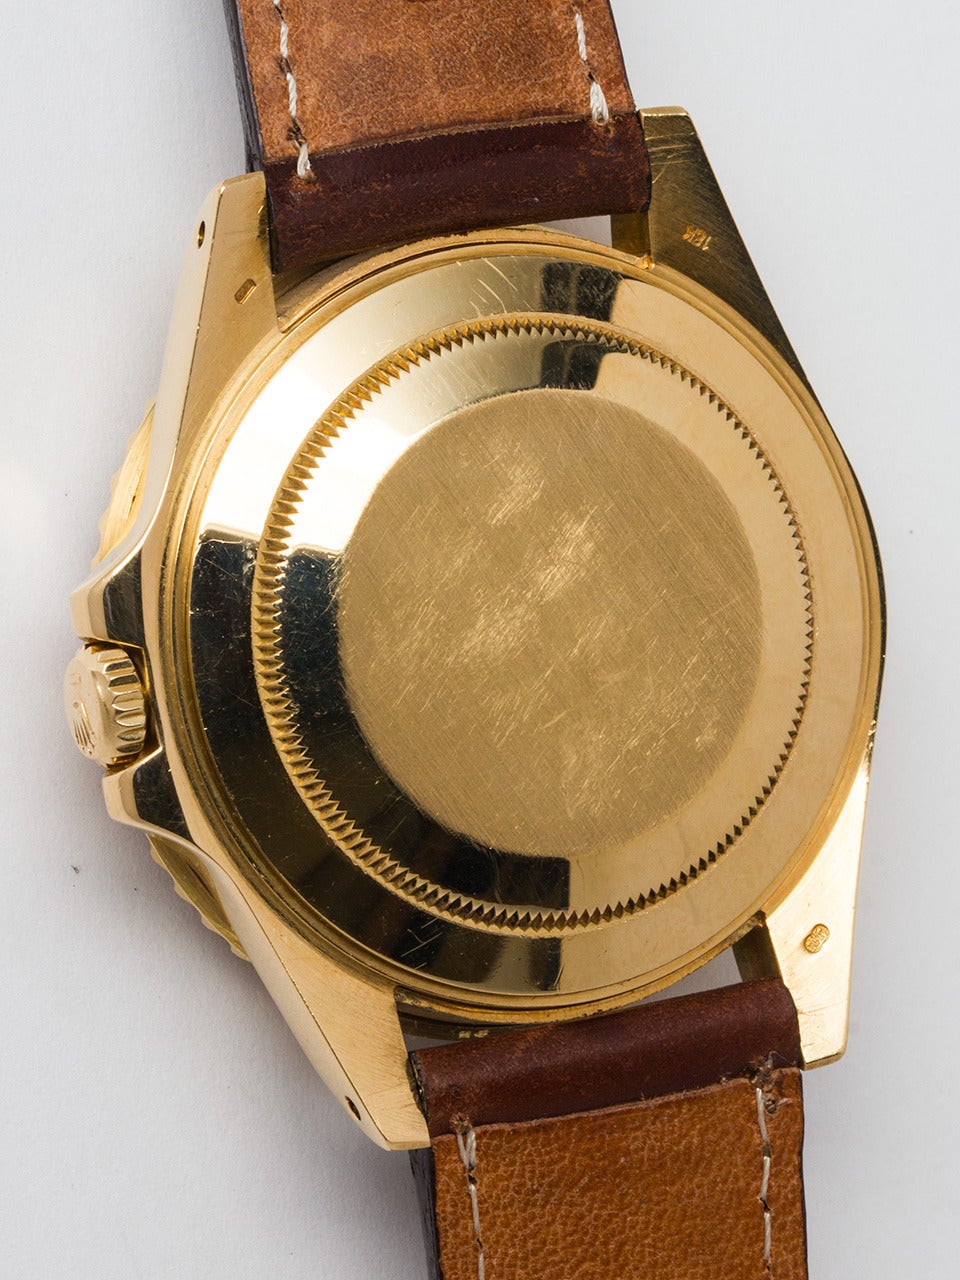 Men's Rolex Yellow Gold GMT-Master II Wristwatch ref 16718 circa 1988